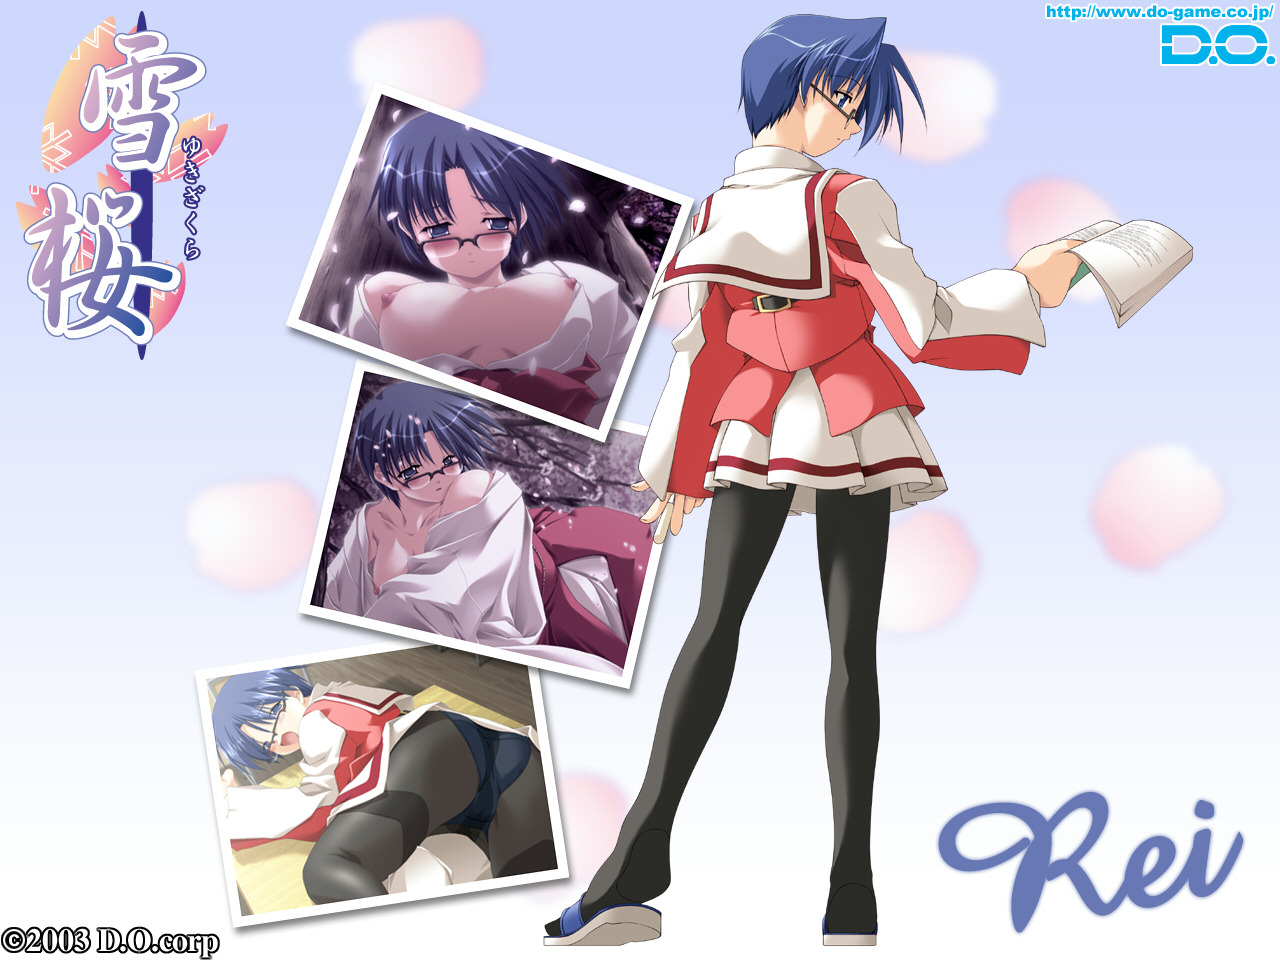 Download High quality Yuki Sakura wallpaper / Anime / 1280x960